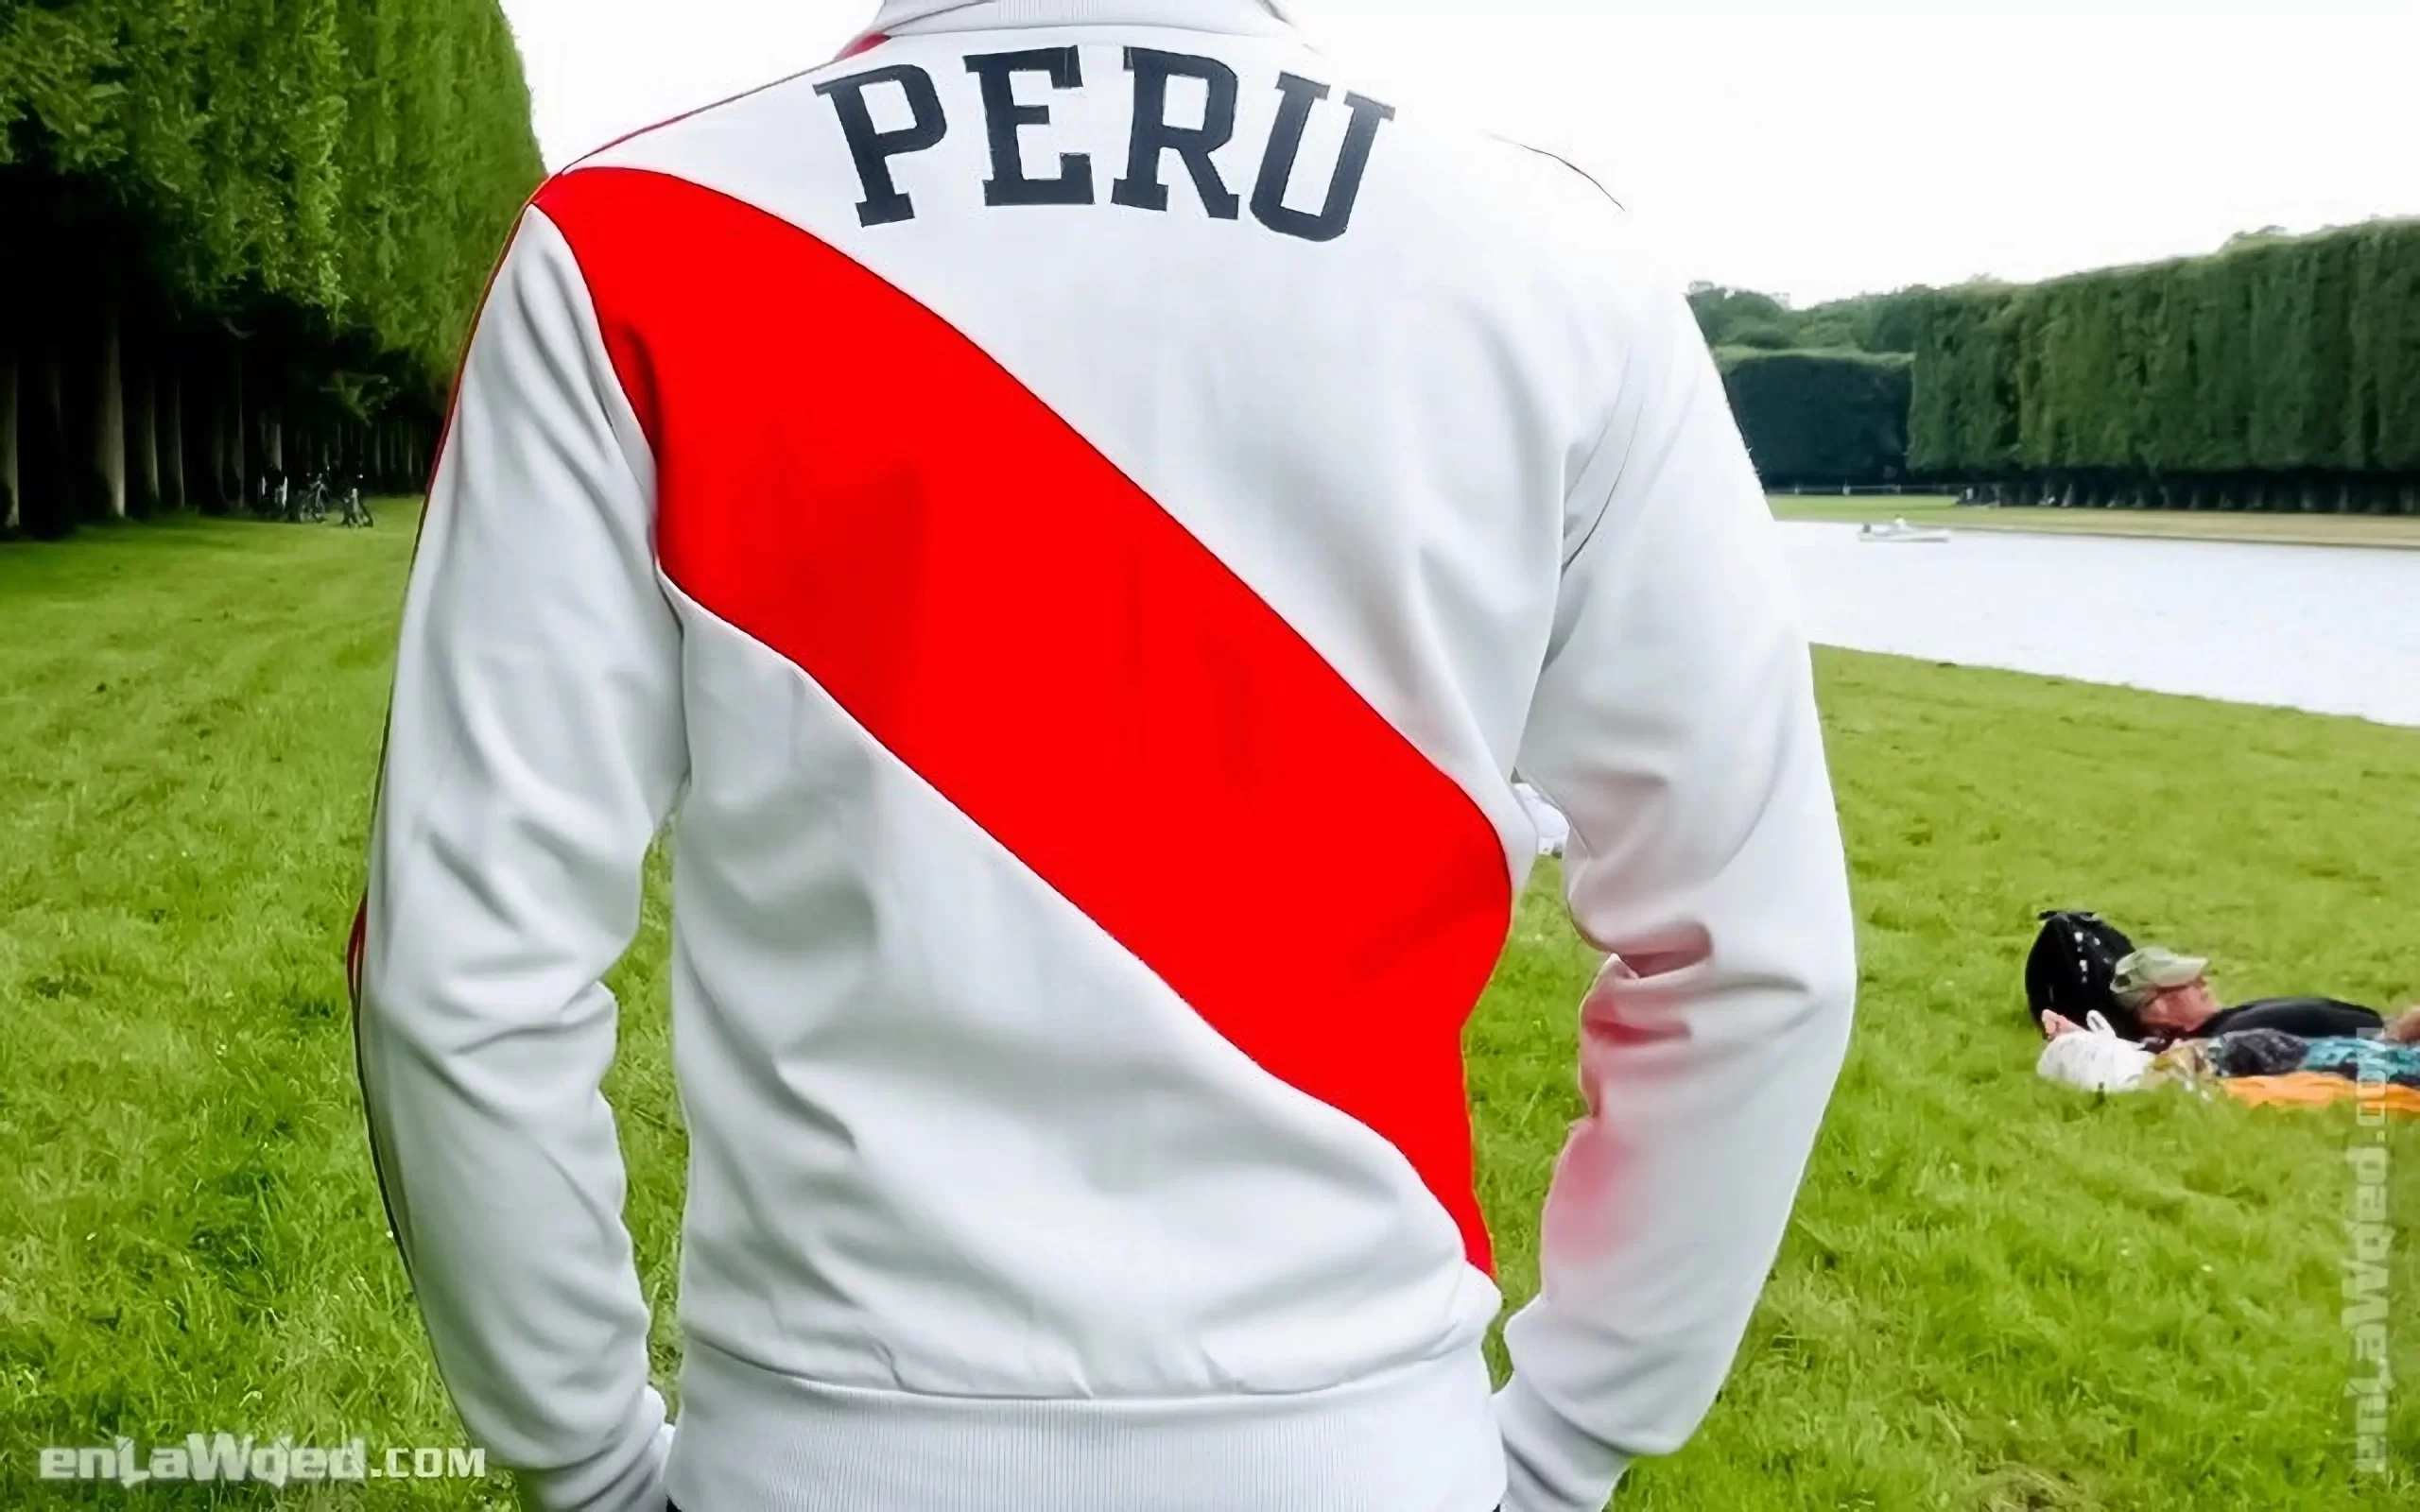 Men’s 2005 Peru ’78 Cubillas TT by Adidas Originals: Definitely (EnLawded.com file #lmc4nnvfk1hviy0317)